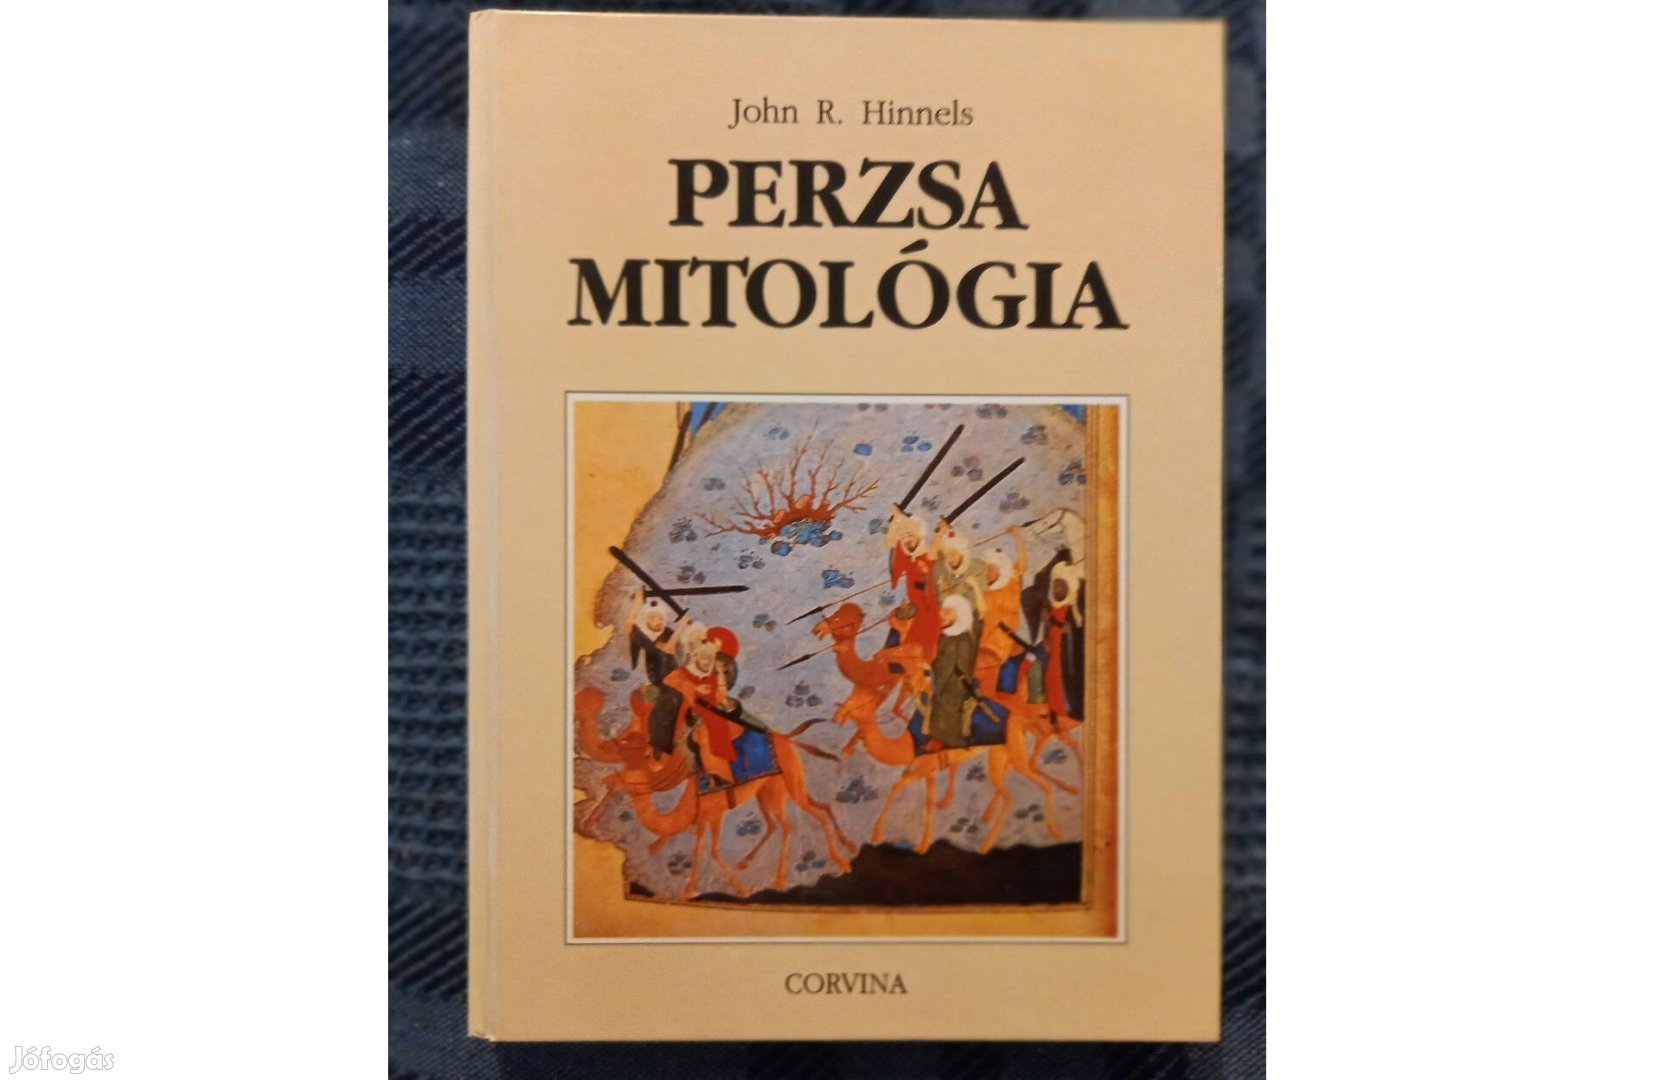 John R. Hinnells: Perzsa mitológia című könyv jó állapotban eladó